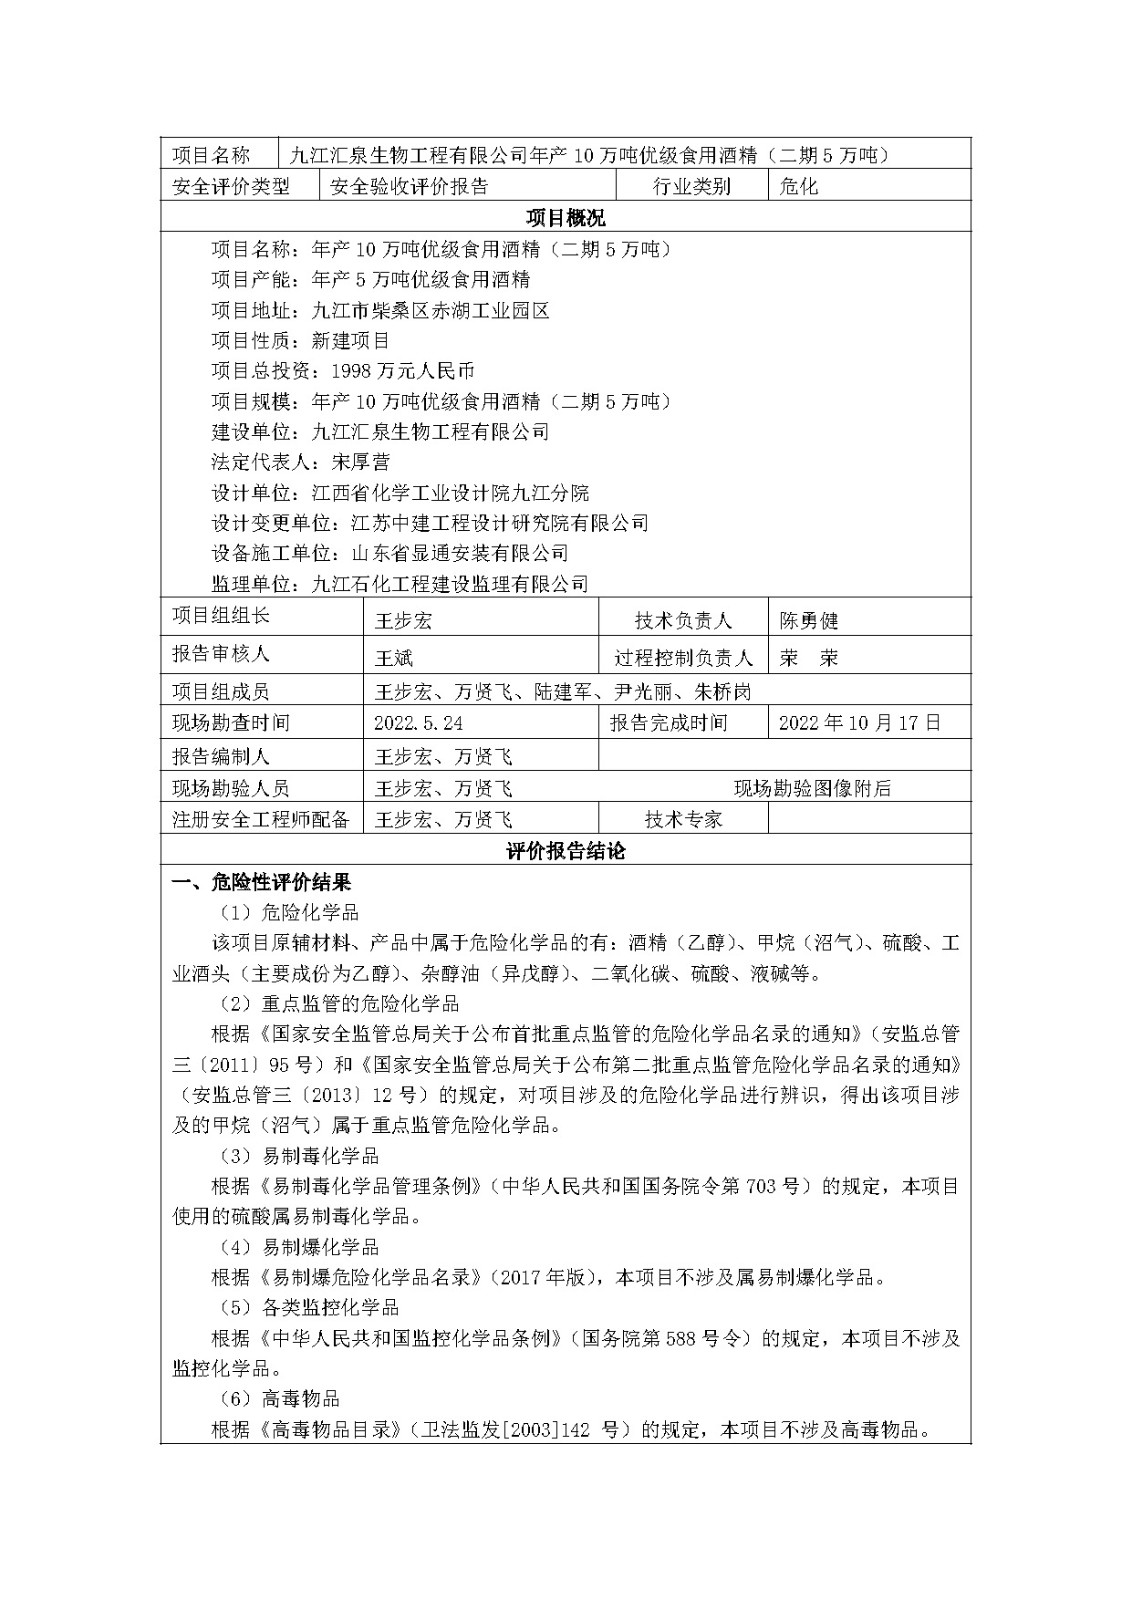 安全评价报告基本信息公开表(九江汇泉生物工程有限公司)